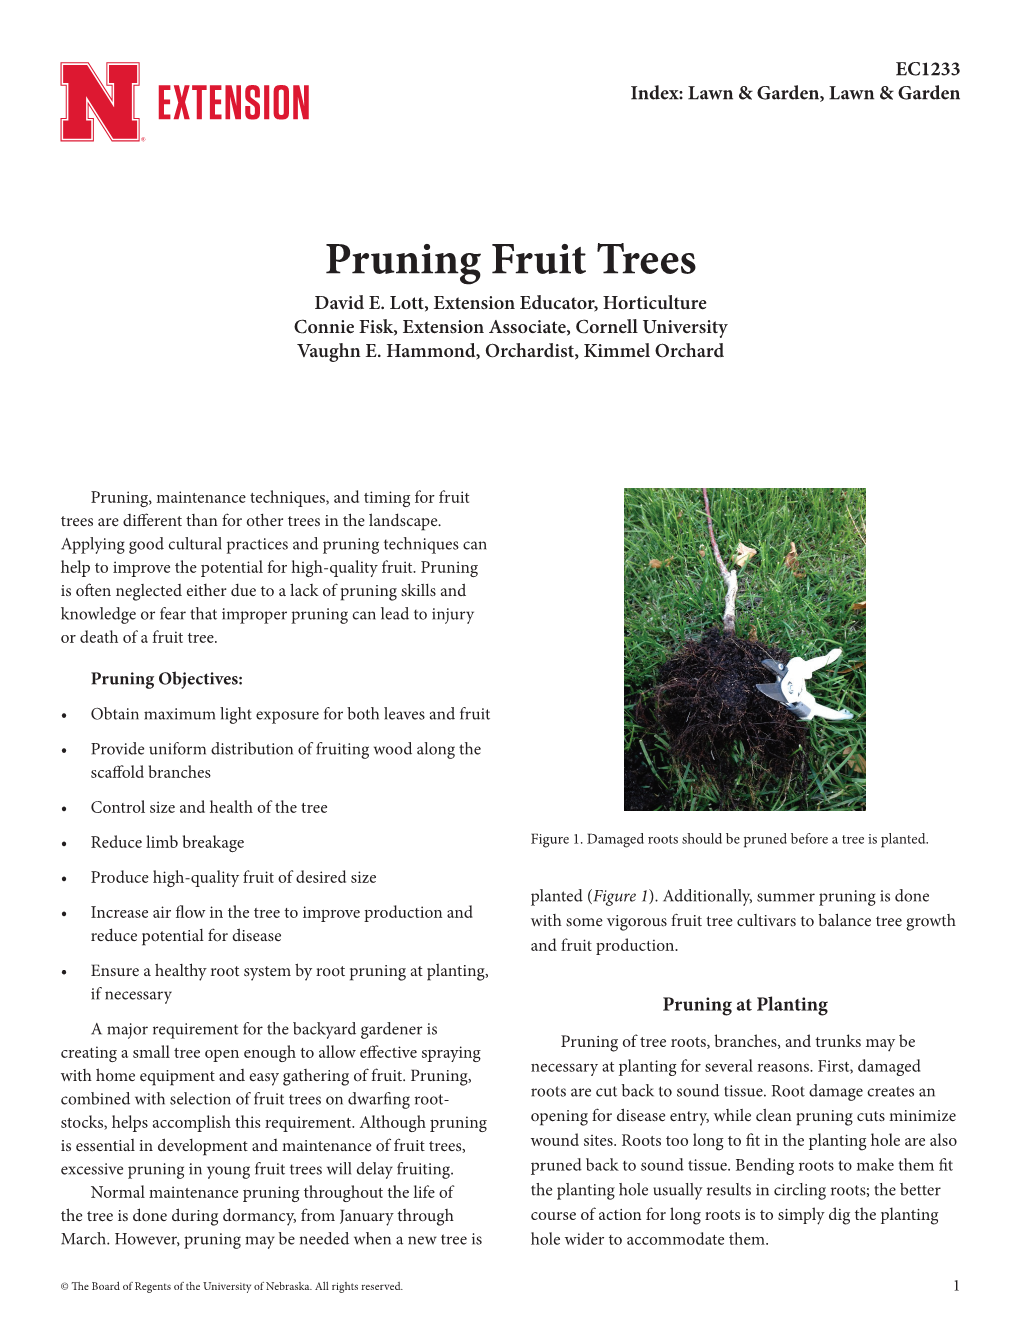 Pruning Fruit Trees David E